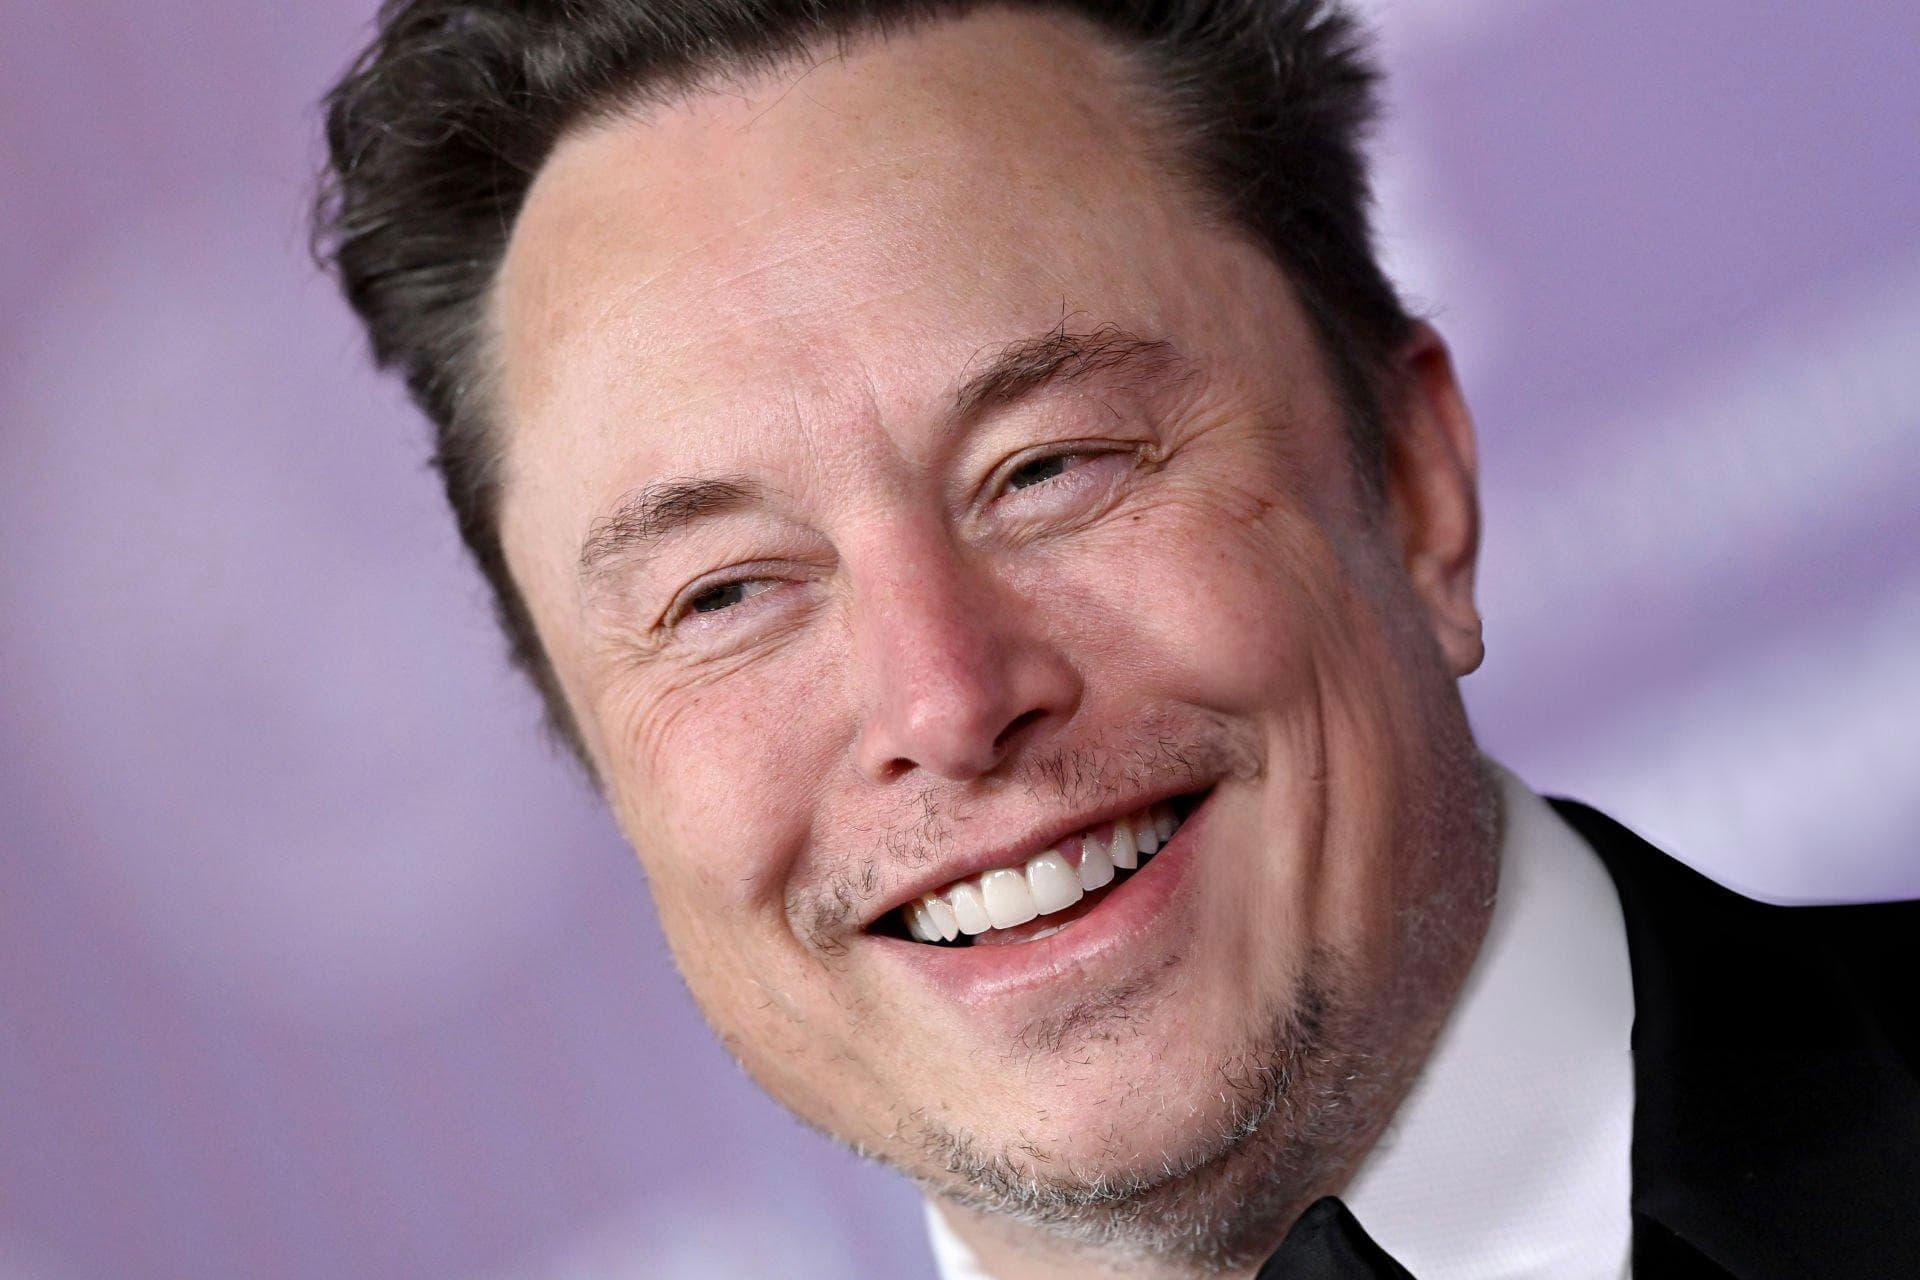 مرجع متخصصين ايران لبخند ايلان ماسك / Elon Musk از نماي نزديك